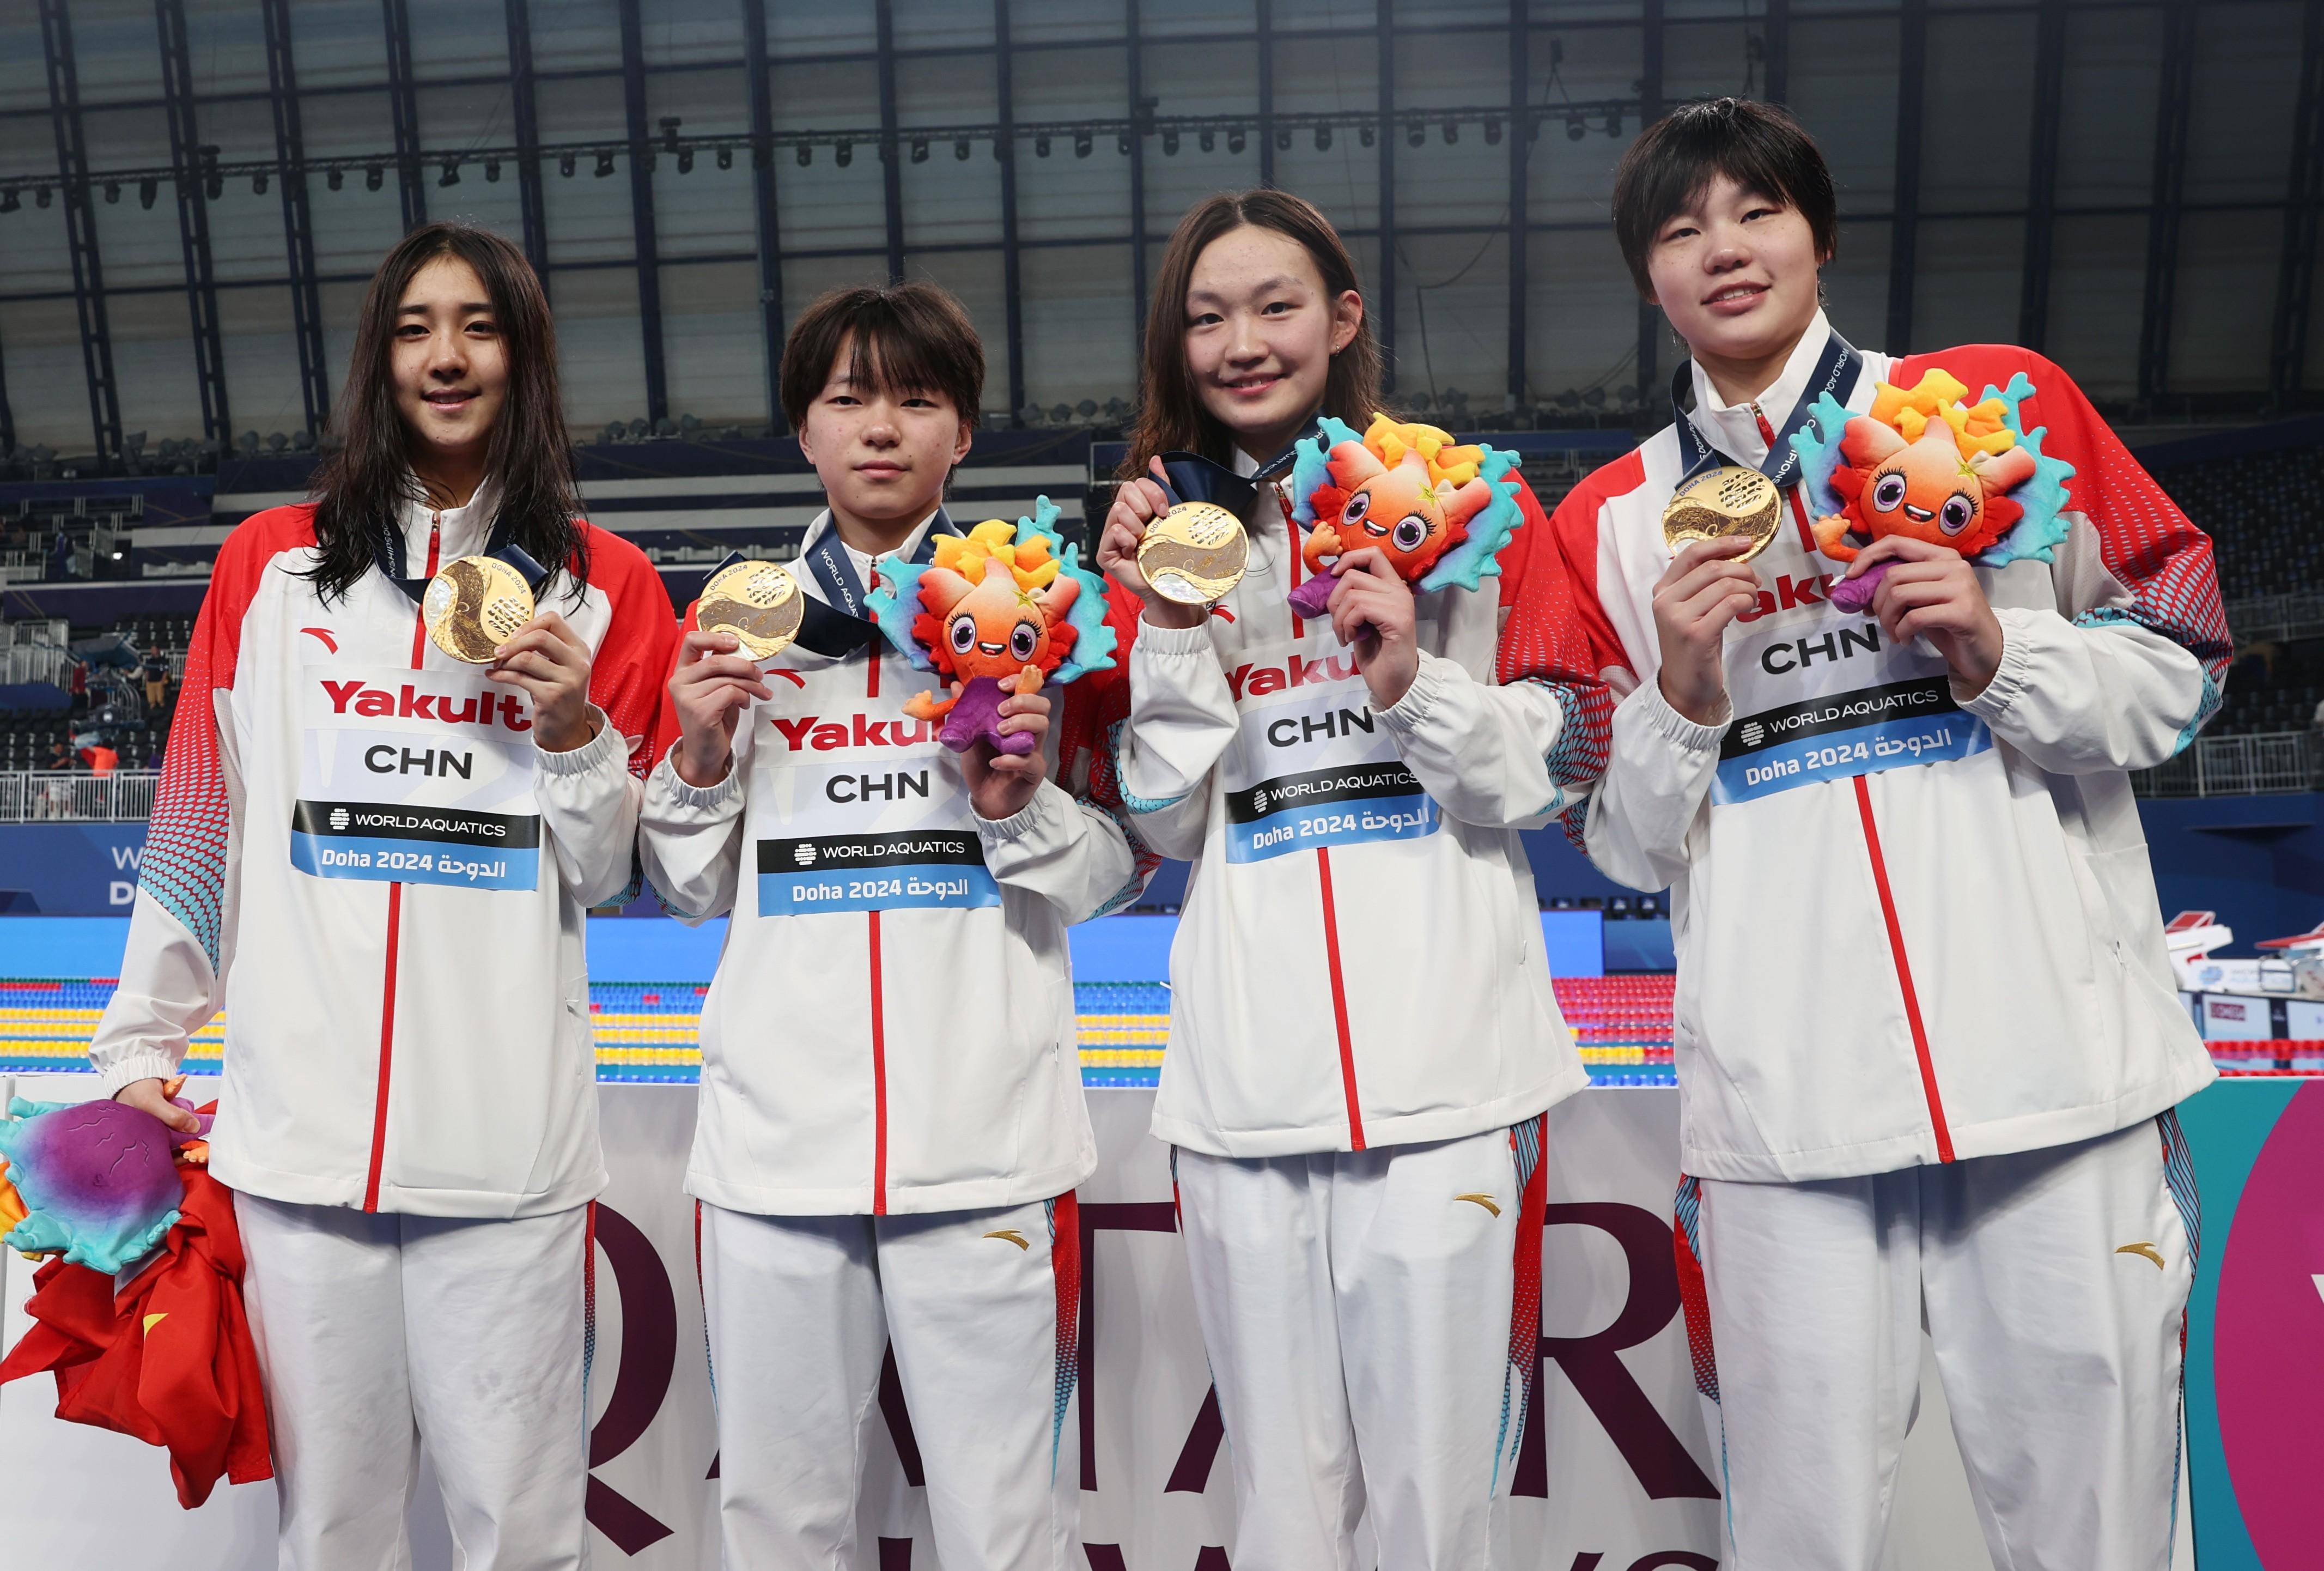 游泳世锦赛:中国队夺得女子4x200自由泳接力冠军